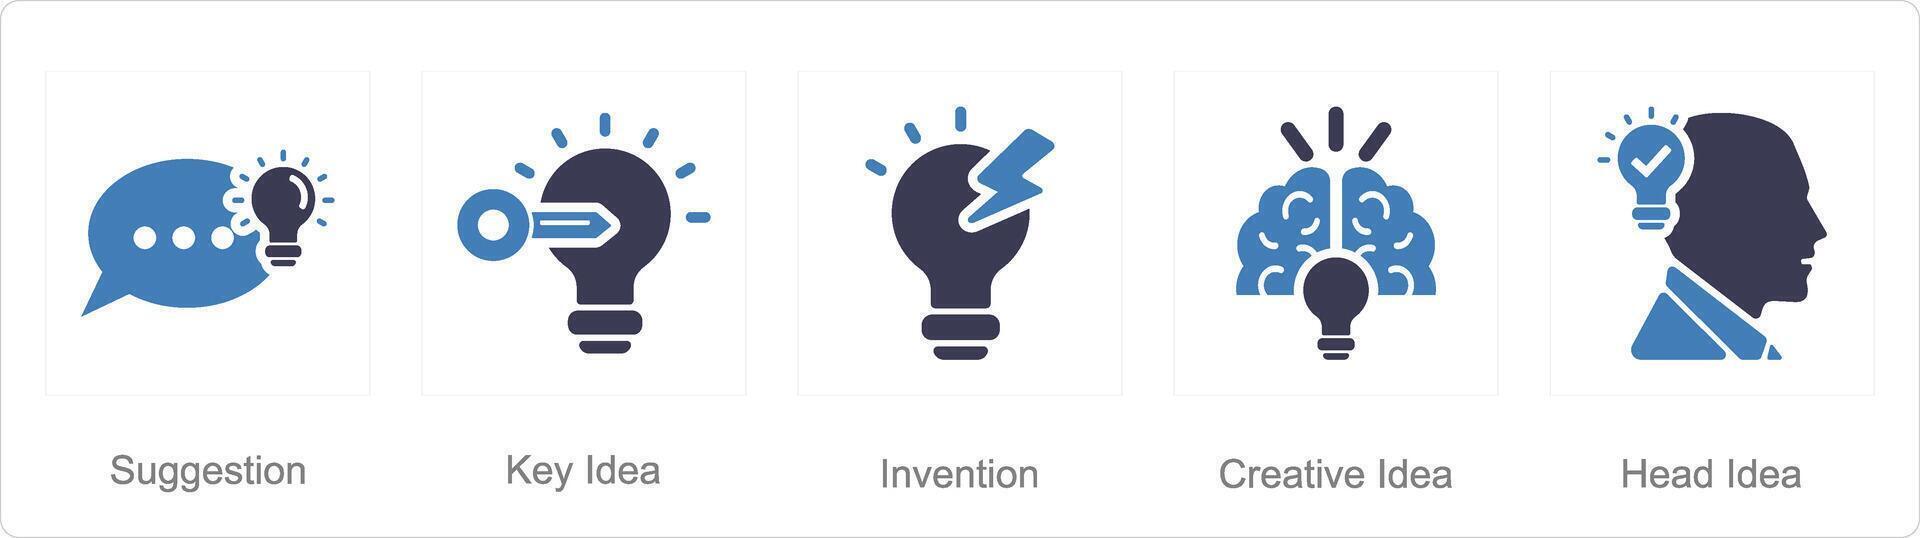 uma conjunto do 5 idéia ícones Como sugestão, chave ideia, invenção vetor